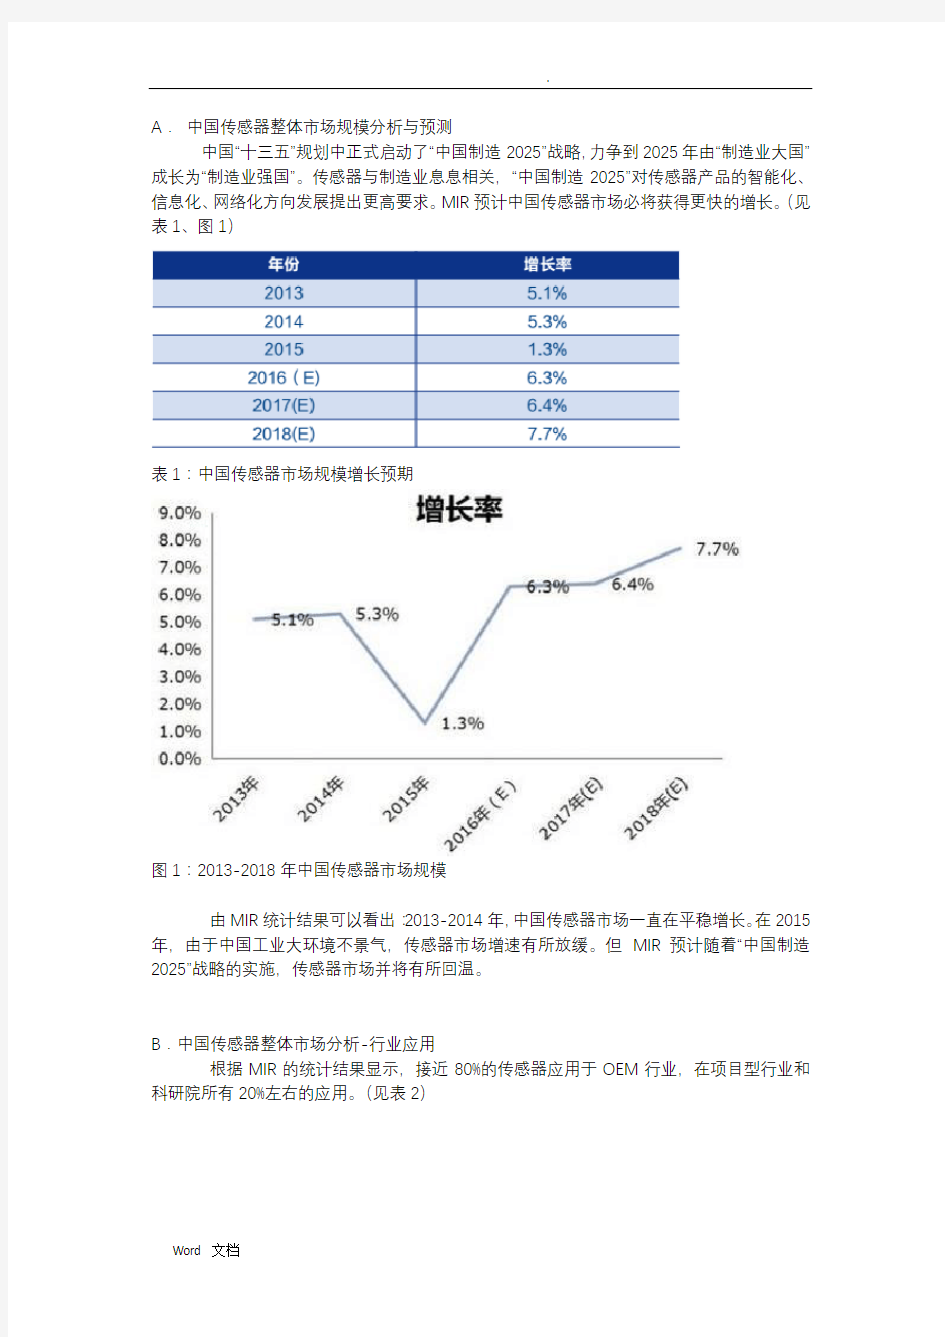 中国传感器市场研究报告